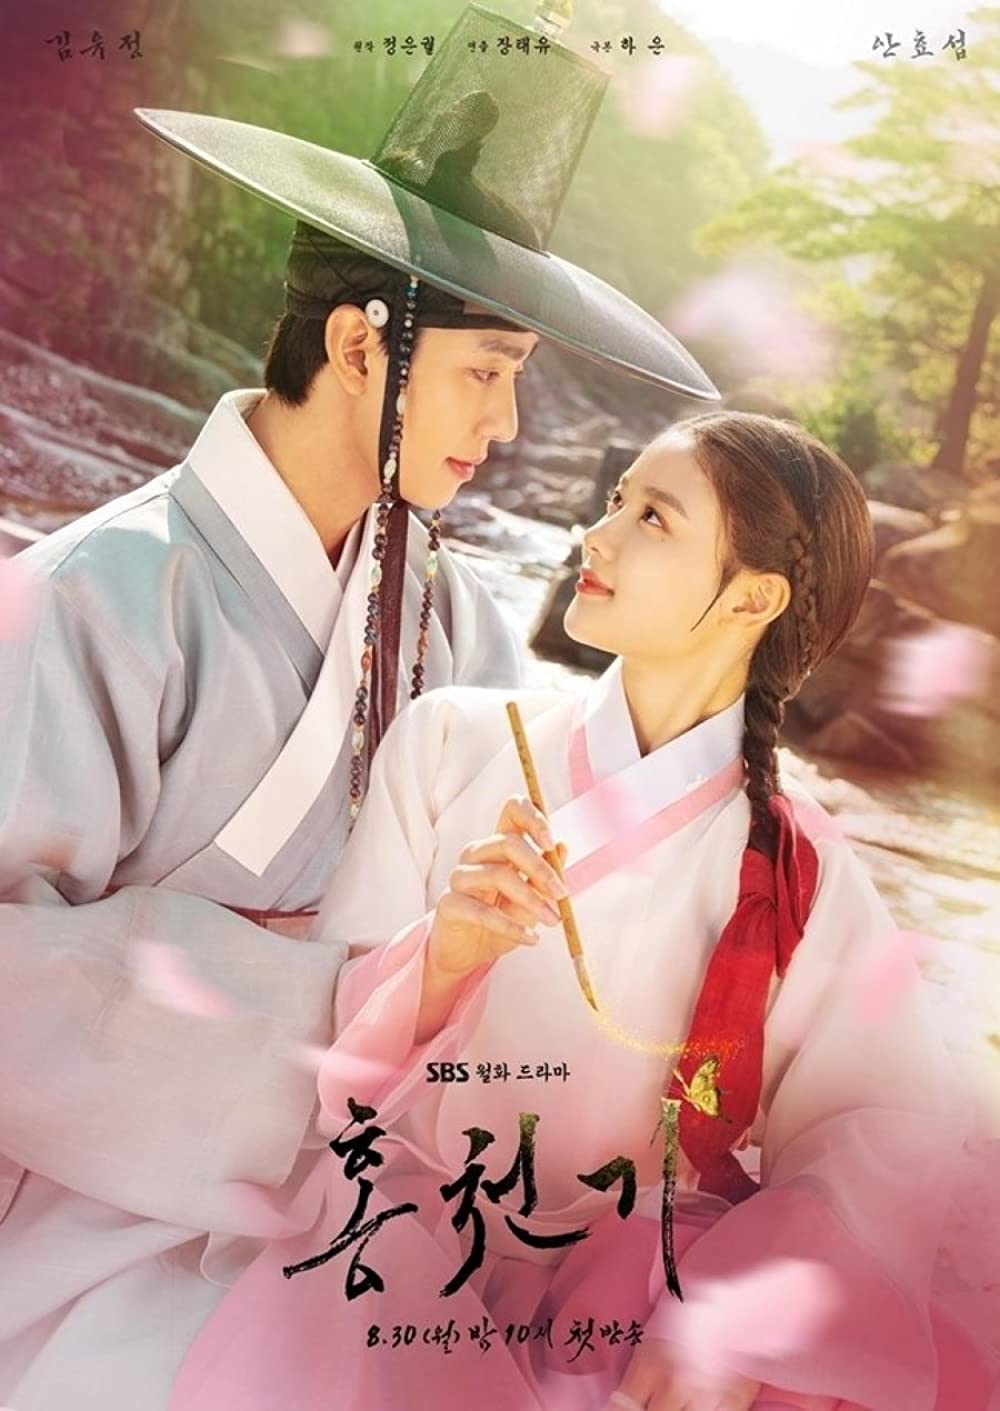 7 Rekomendasi drama Korea kisahkan kutukan, banyak dosa turunan